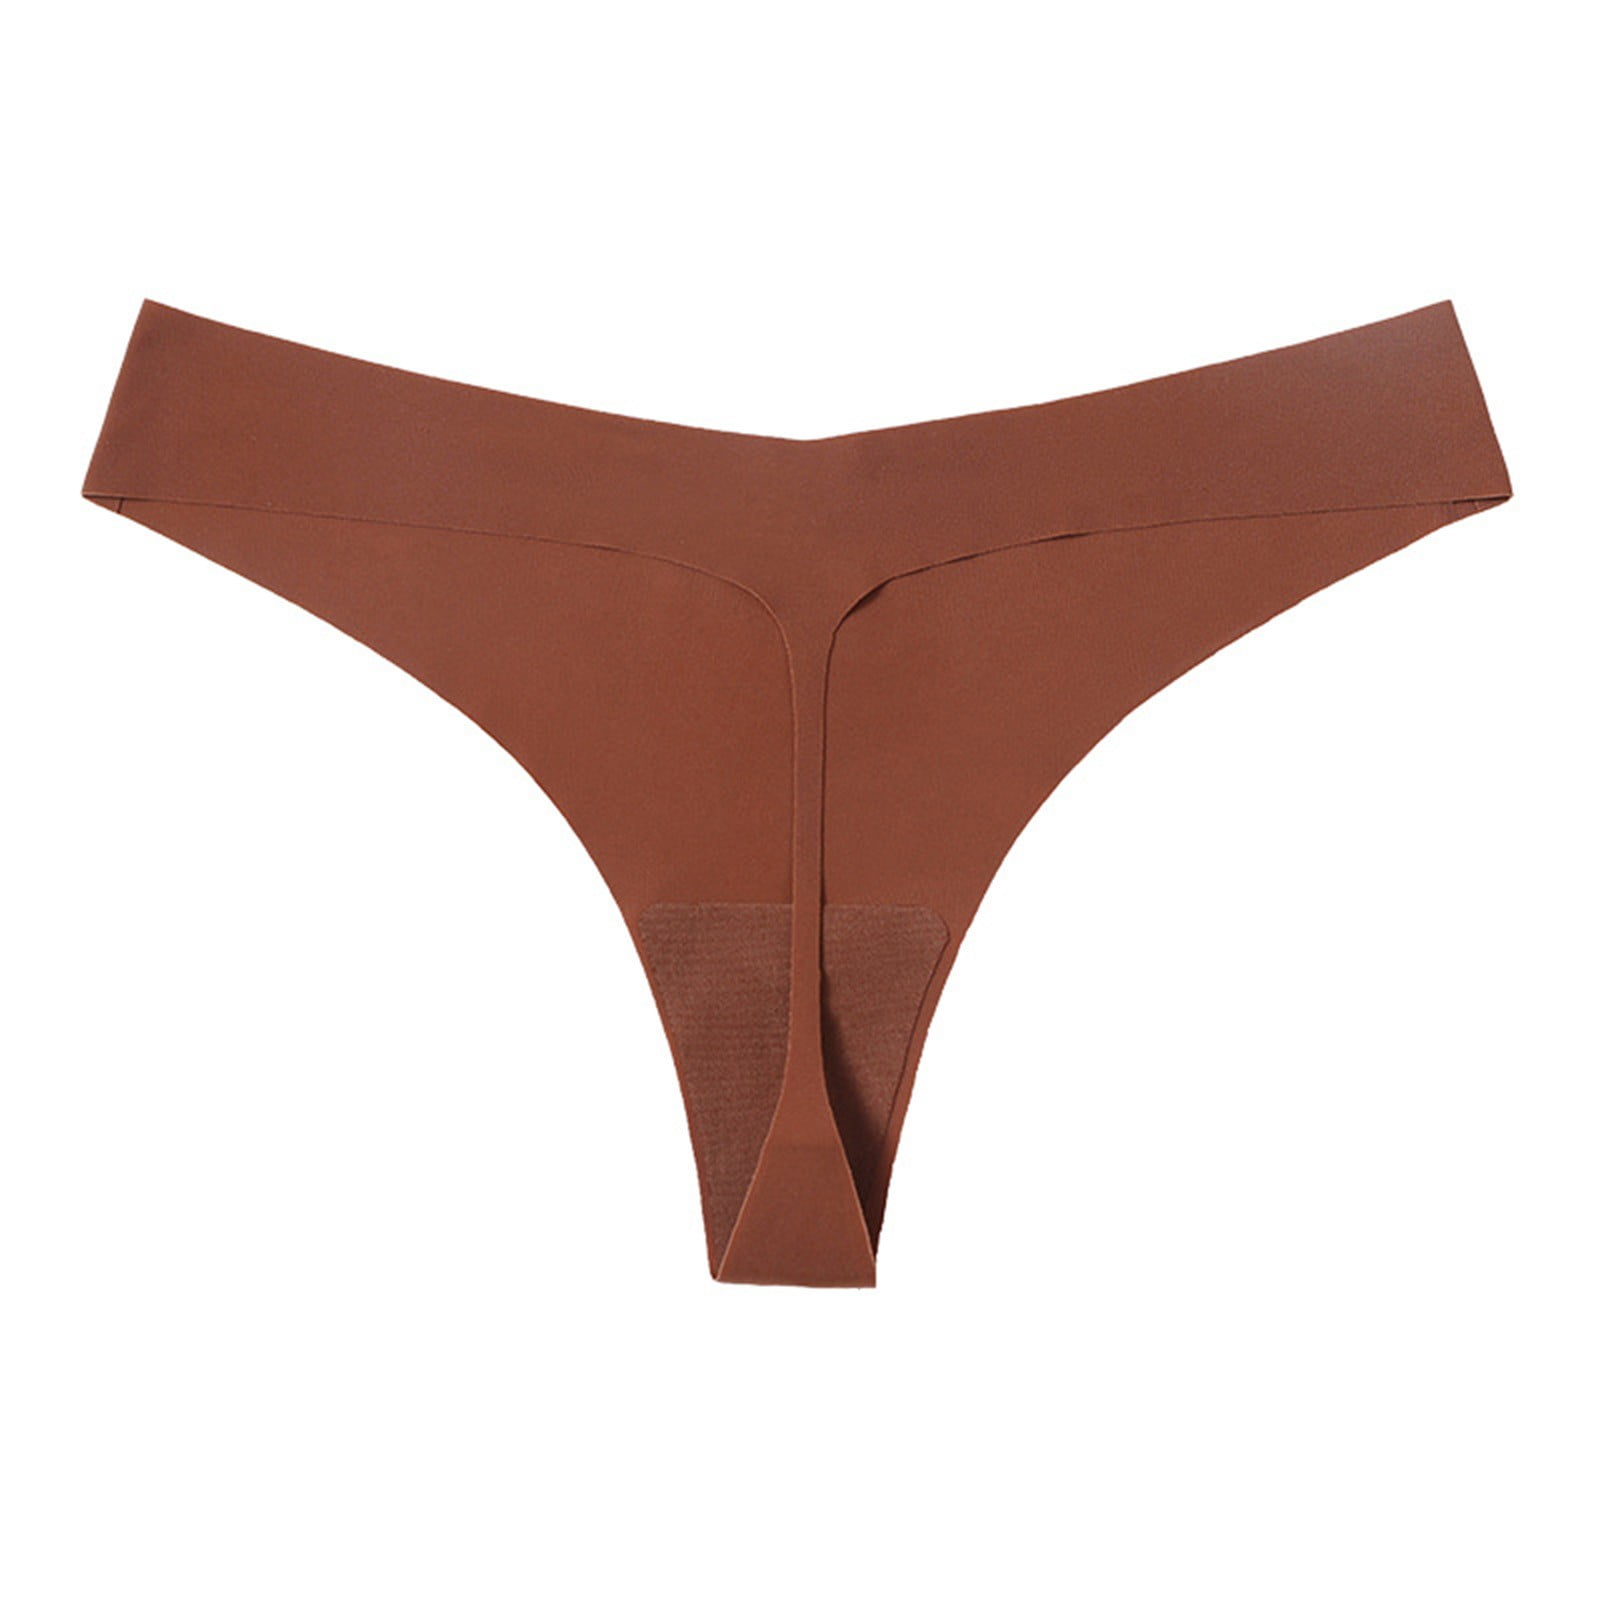 Lingerie Sets for Women Hot Girls Low Waist Panty Underwear Bikini Seamless  Thongs Underwear Solid Nylon Ice Silk 